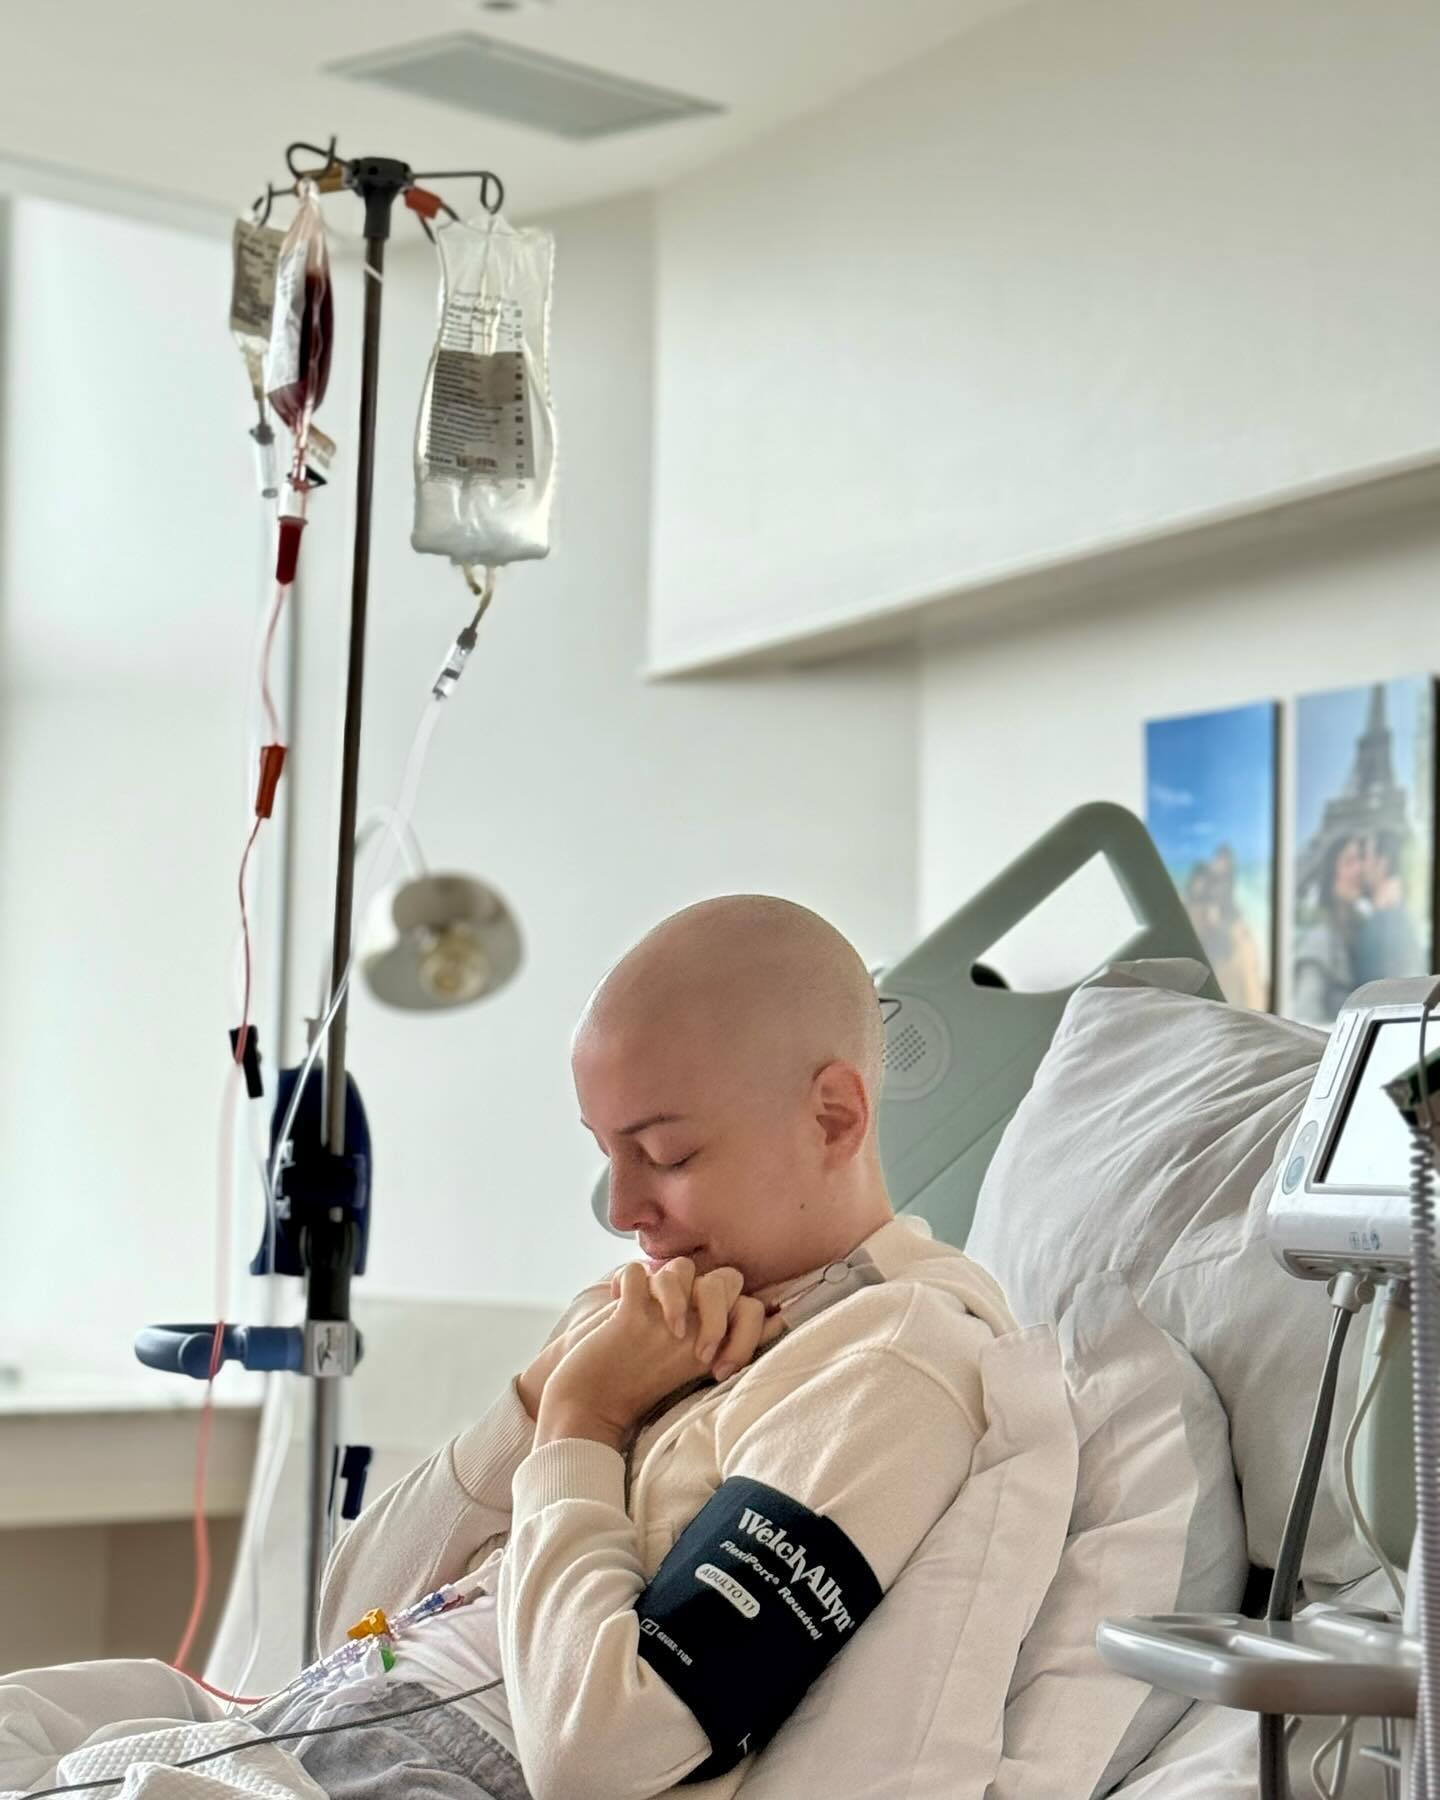 Fabiana Justus recebe doação de medula óssea: 'Segunda chance' Reprodução/Instagram